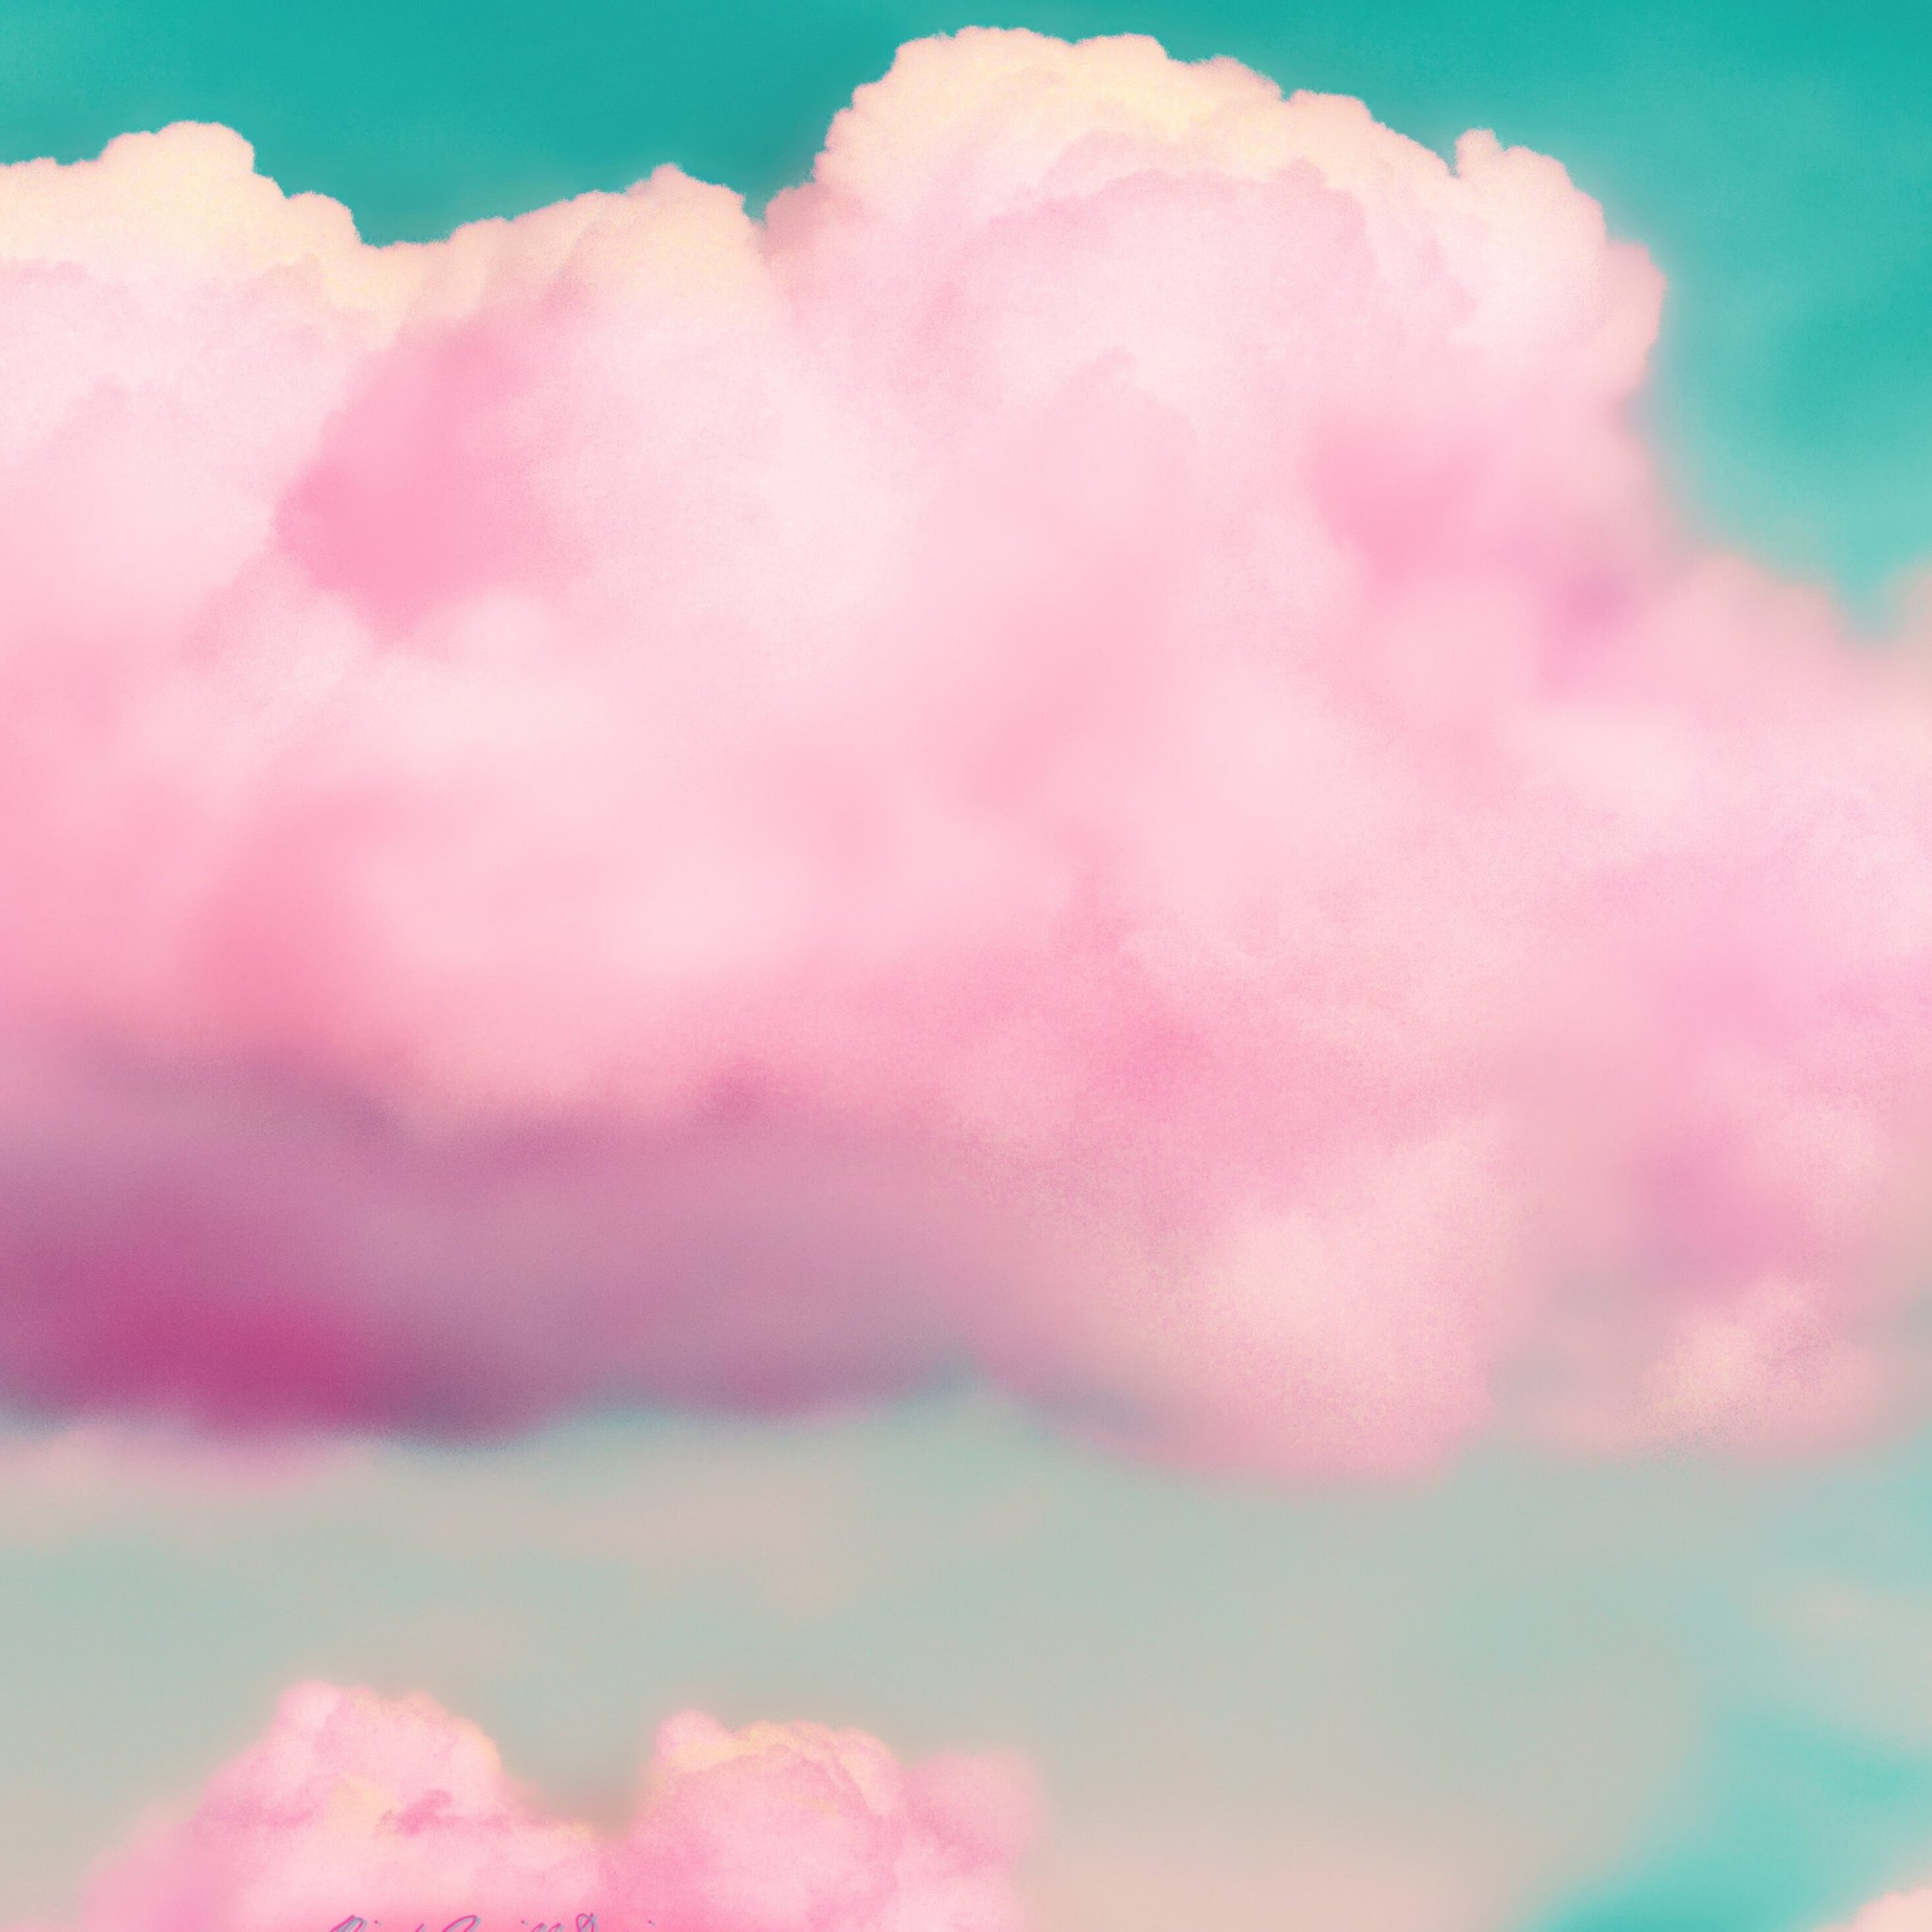 Ảnh mây màu hồng tươi sẽ đem đến cho bạn những cảm xúc tuyệt vời khi nhìn lên trời trong một ngày đẹp. Hãy xem để cảm nhận sự đẹp của những đám mây hồng tuyệt đẹp này.